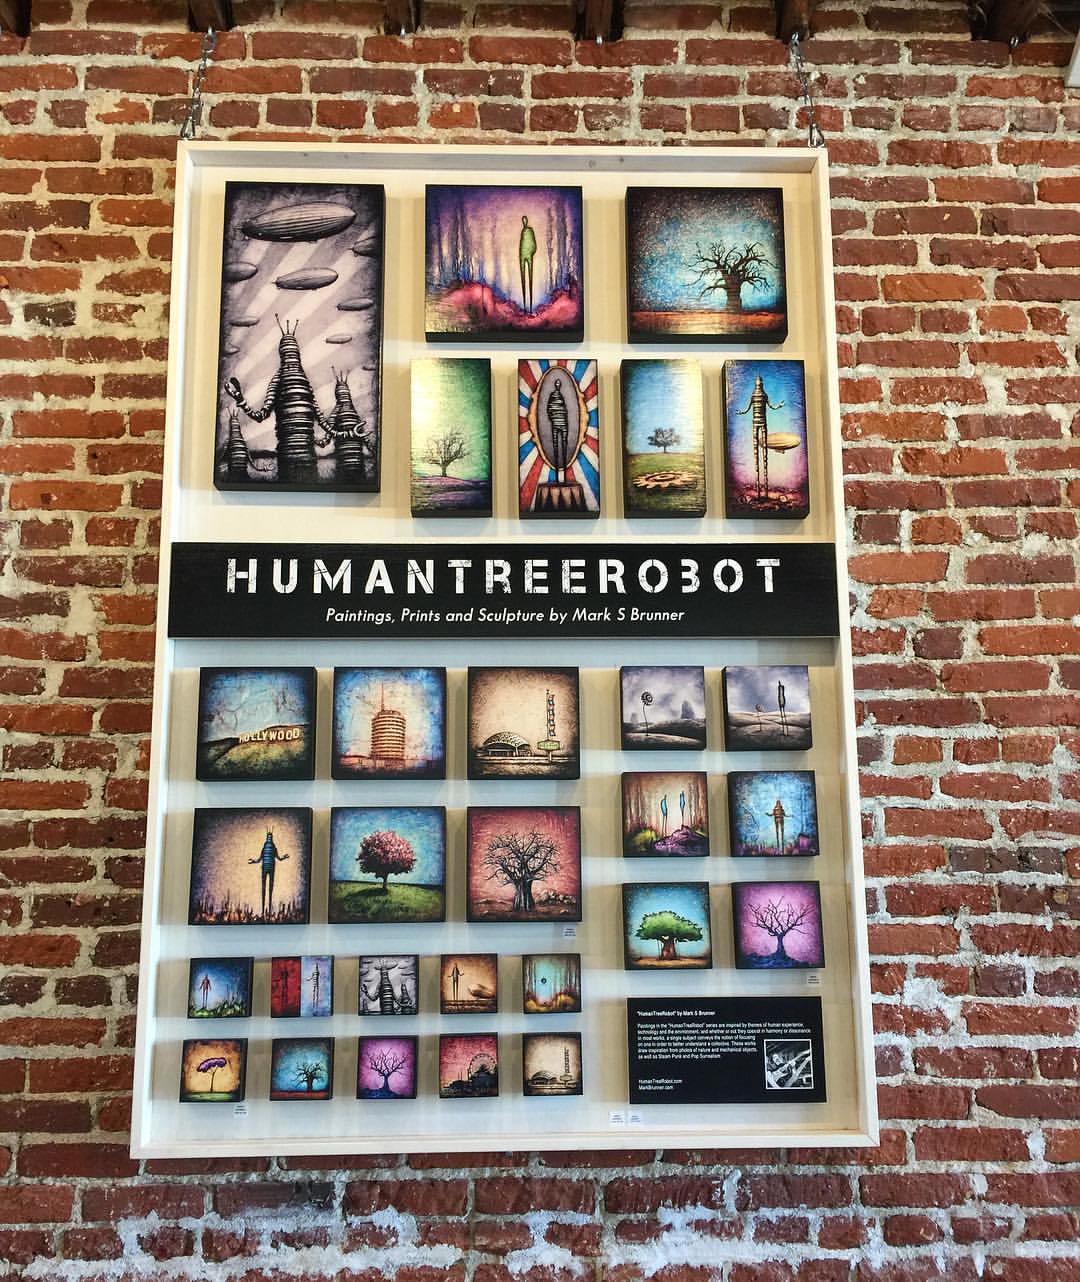  HumanTreeRobot for sale at Mindfulnest, Highland Park 